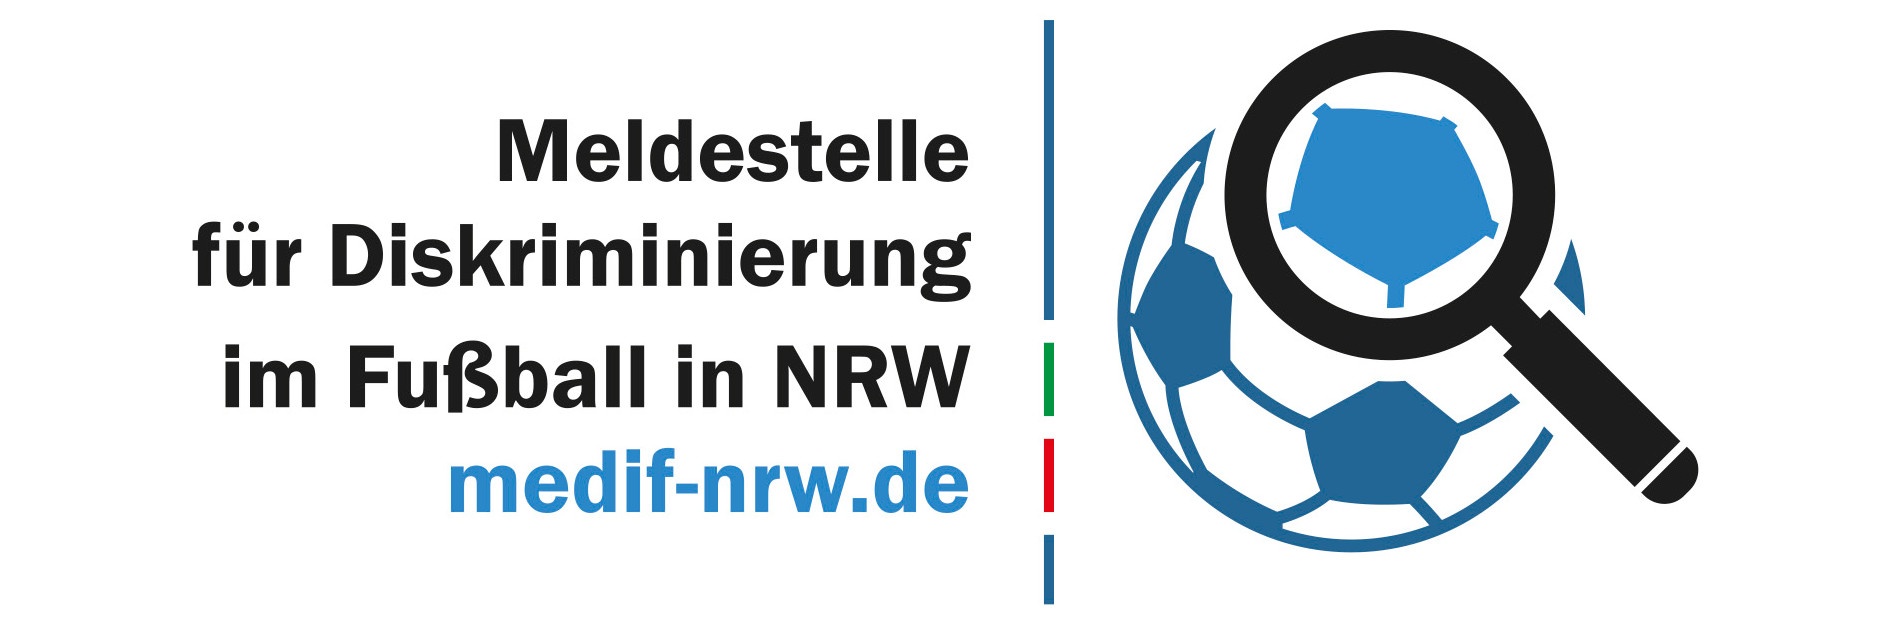 Ein Fußball unter einer Lupe. Dazu ein "Meldestelle für Diskriminierung im Fußball in NRW - medif-nrw.de"-Schriftzug.